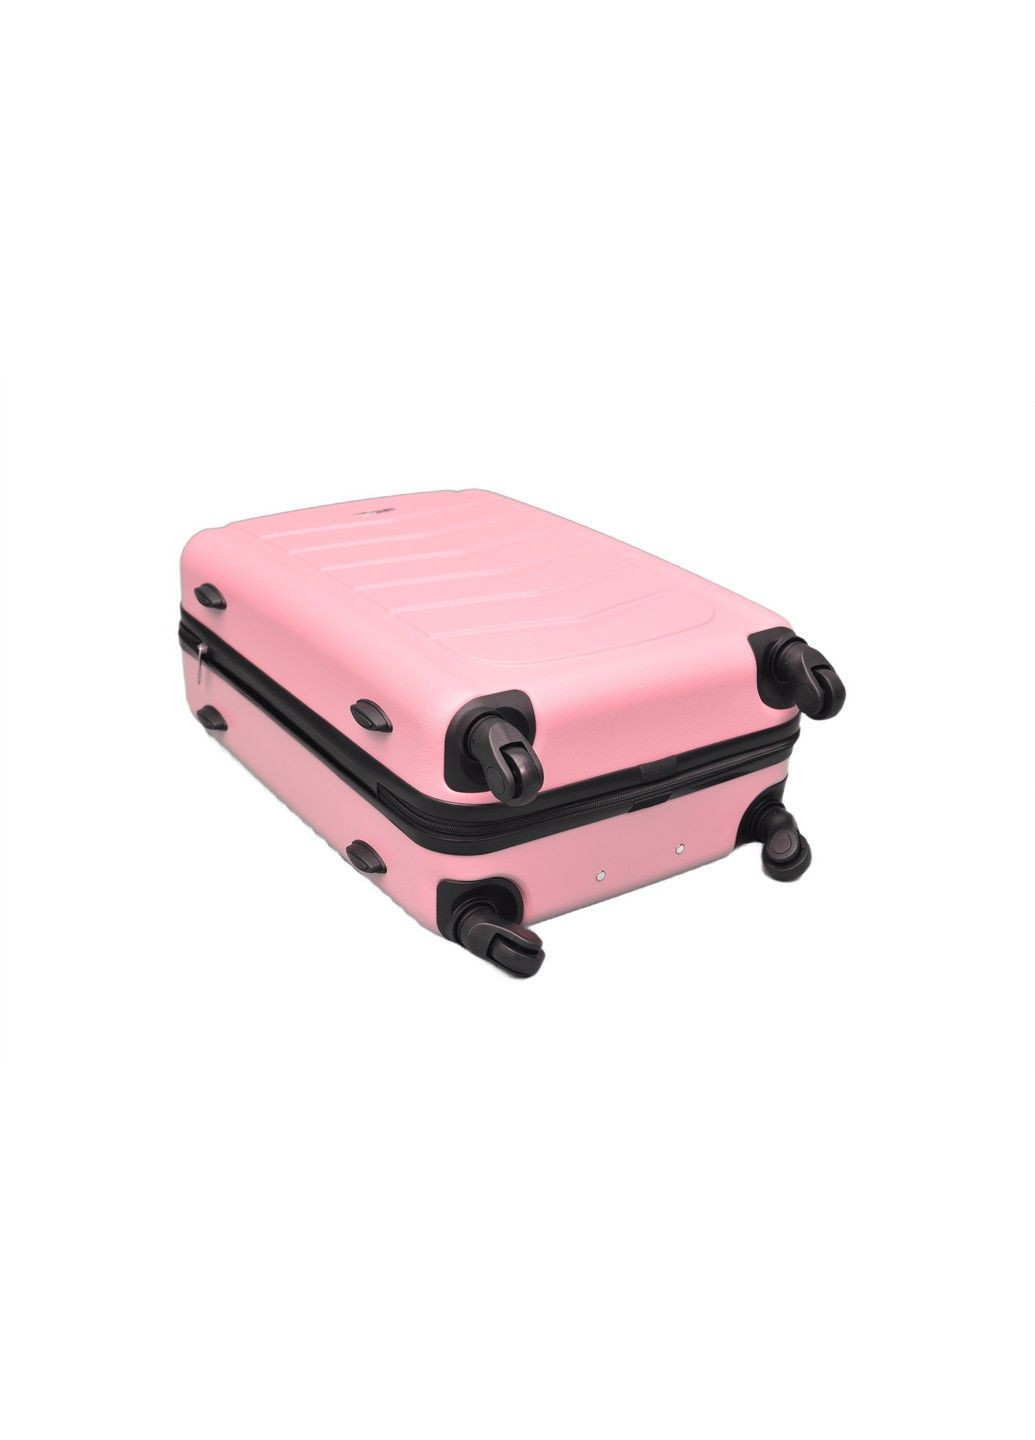 Чемодан пластиковый дорожный на колесах Большой 79 л Розовый (520) RGL (289355978)